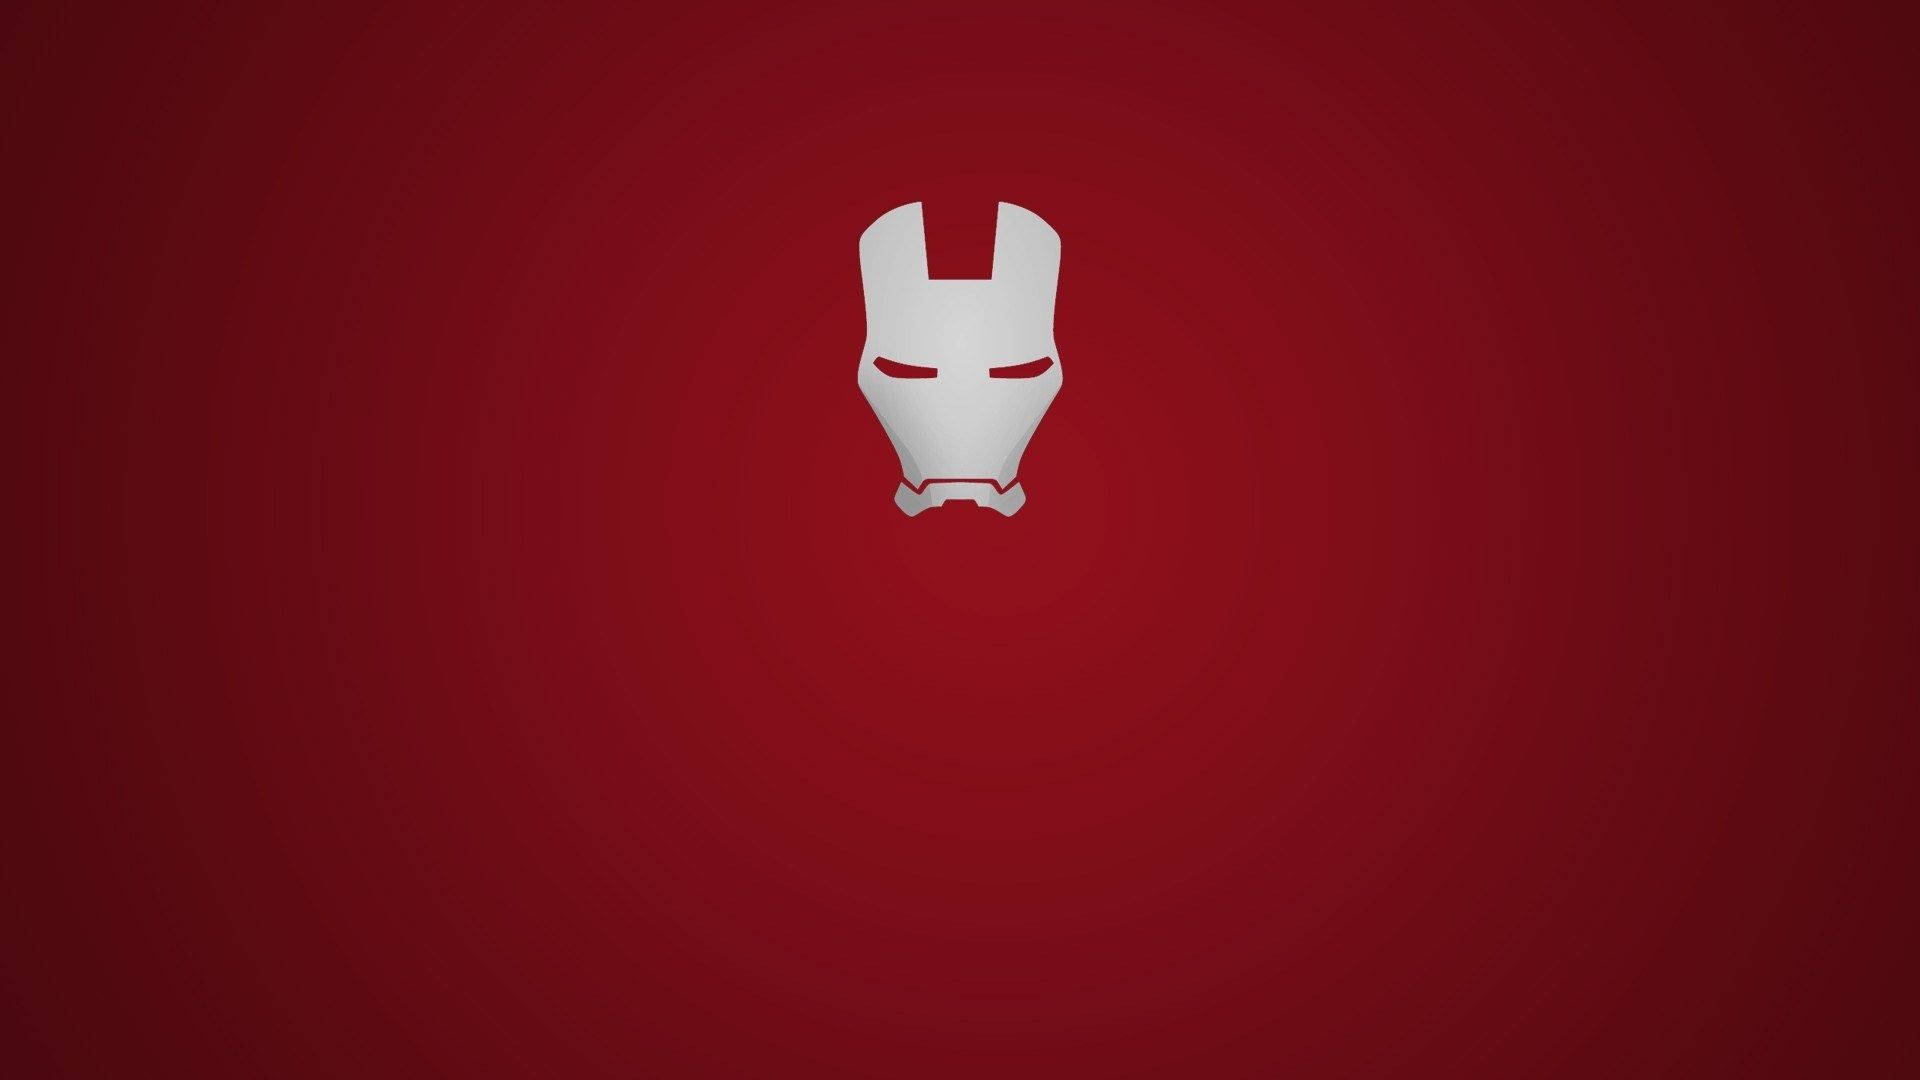 Minimalist Iron Man Logo Mask Background